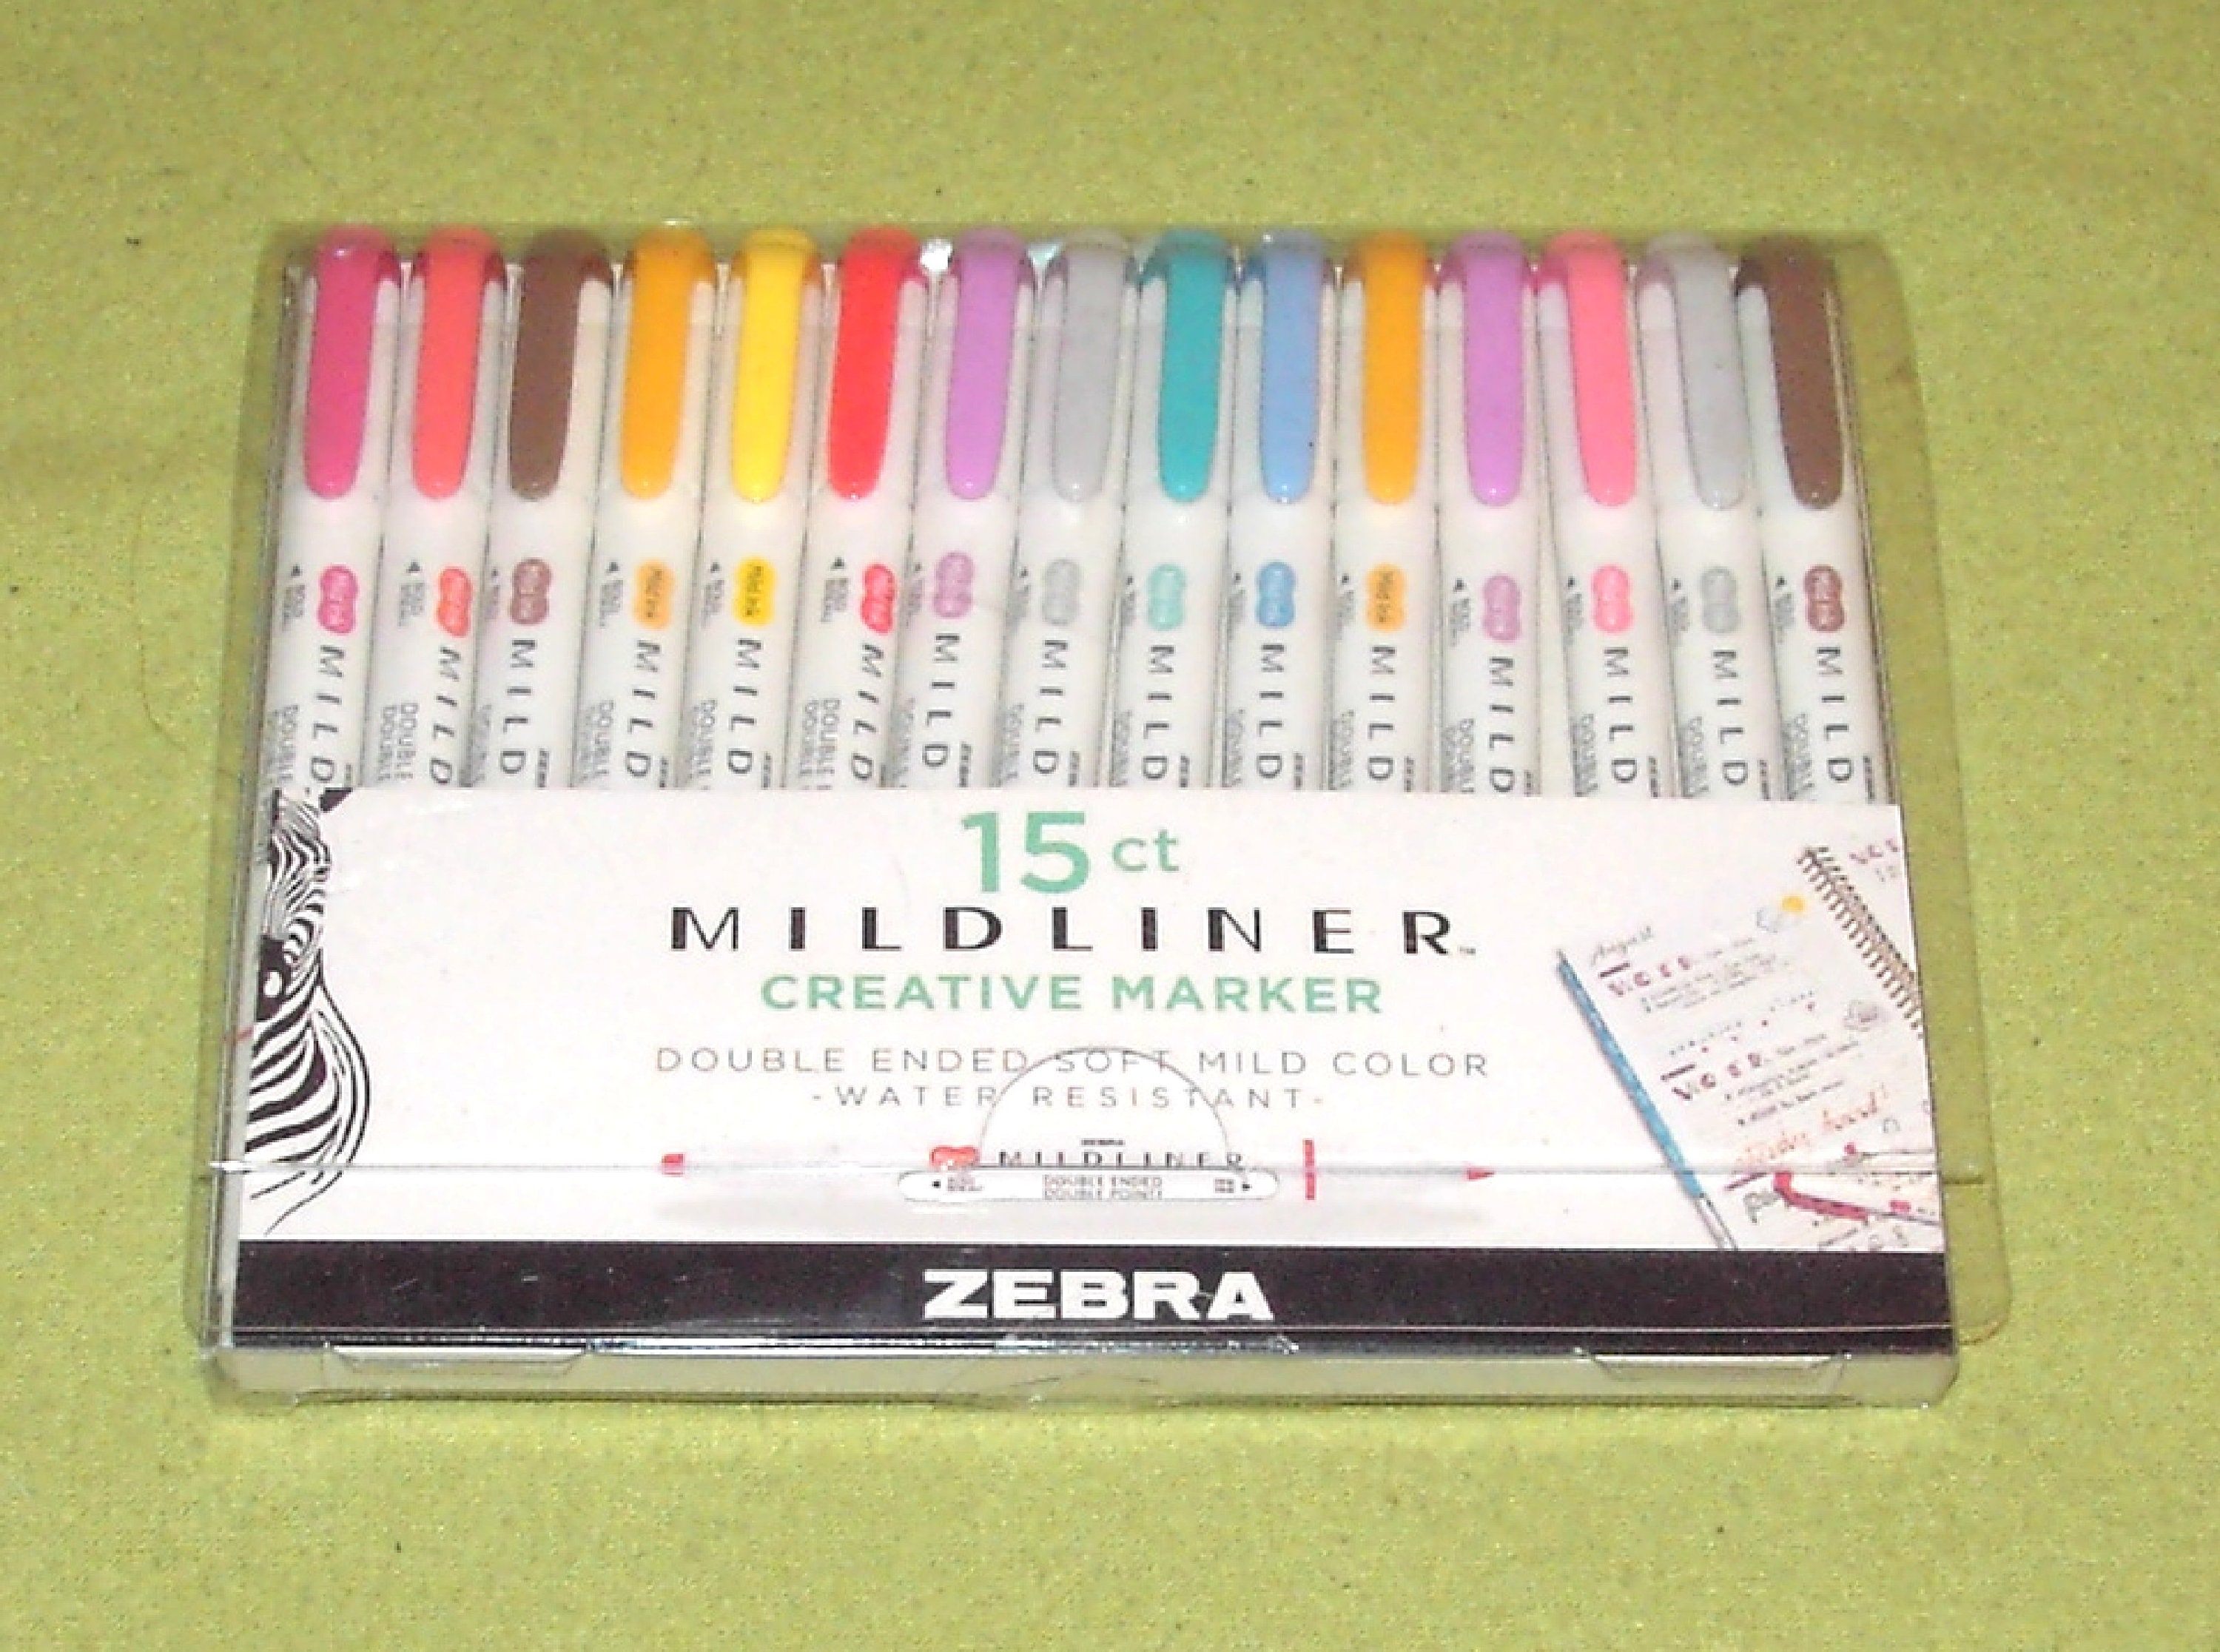 Zebra Mildliner™ Double Ended Creative Marker Set, 15ct.